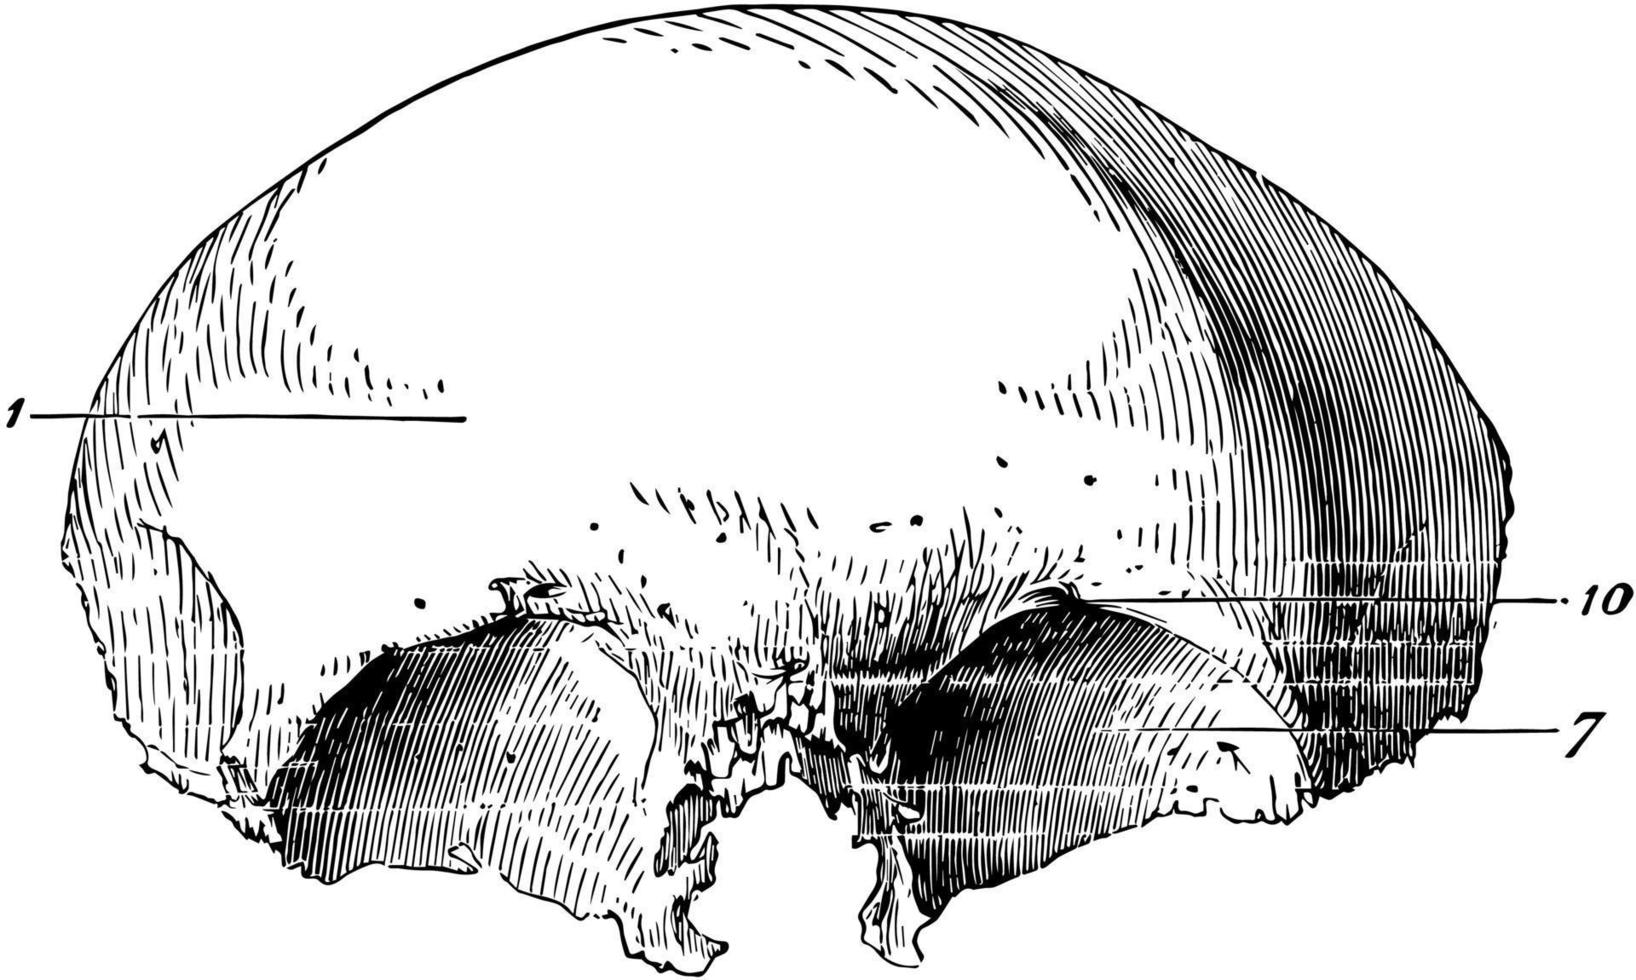 hueso frontal del cráneo humano, ilustración antigua. vector